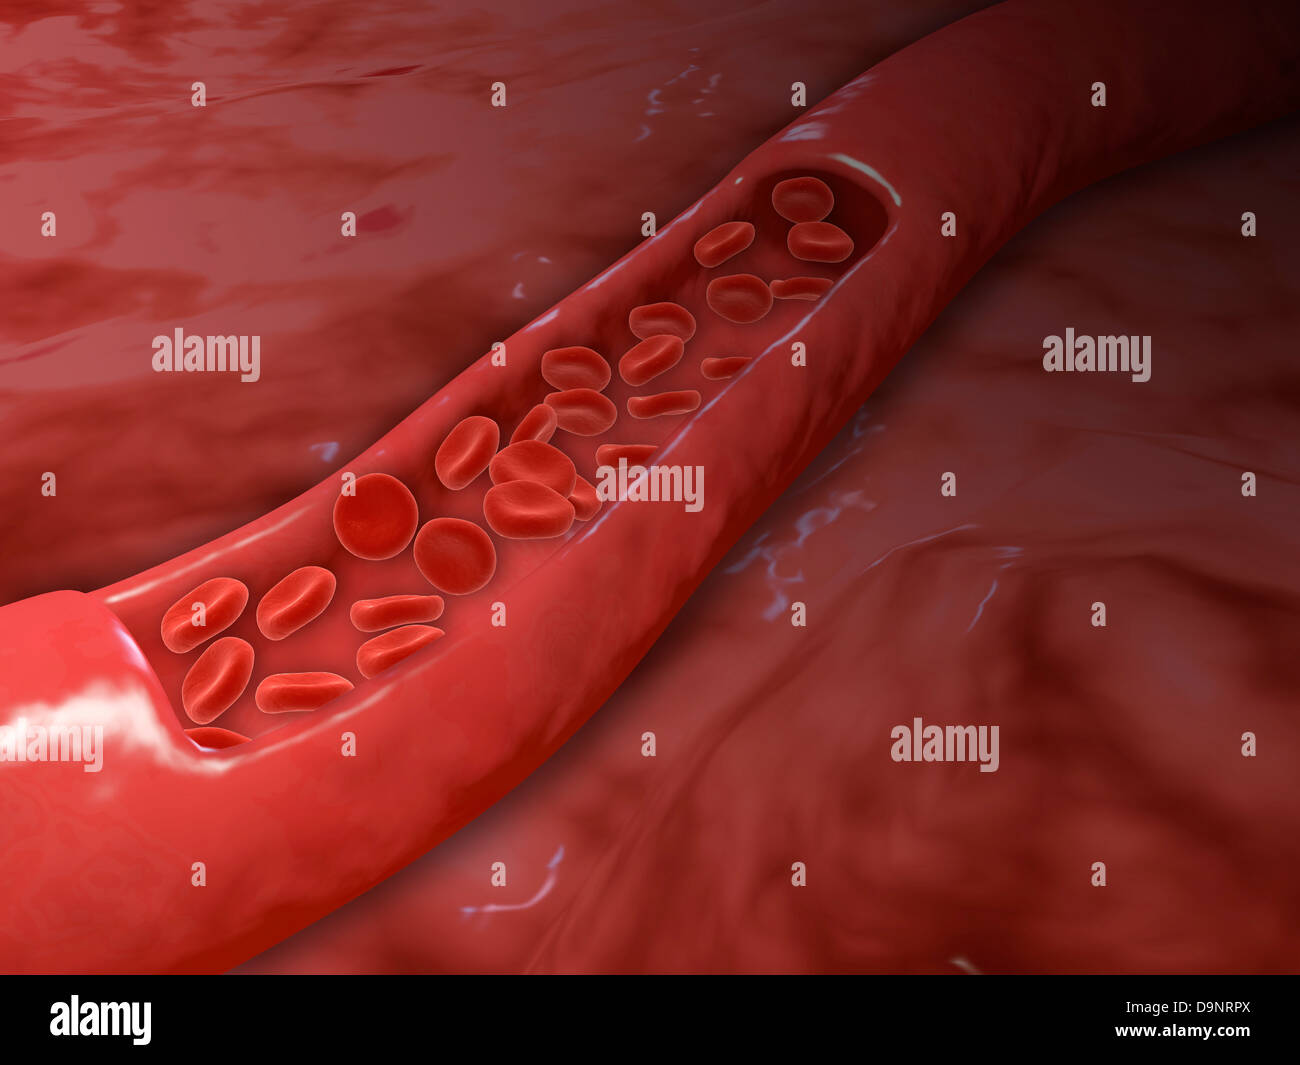 Arteria con la sección transversal de flujo de la célula de sangre roja. Foto de stock